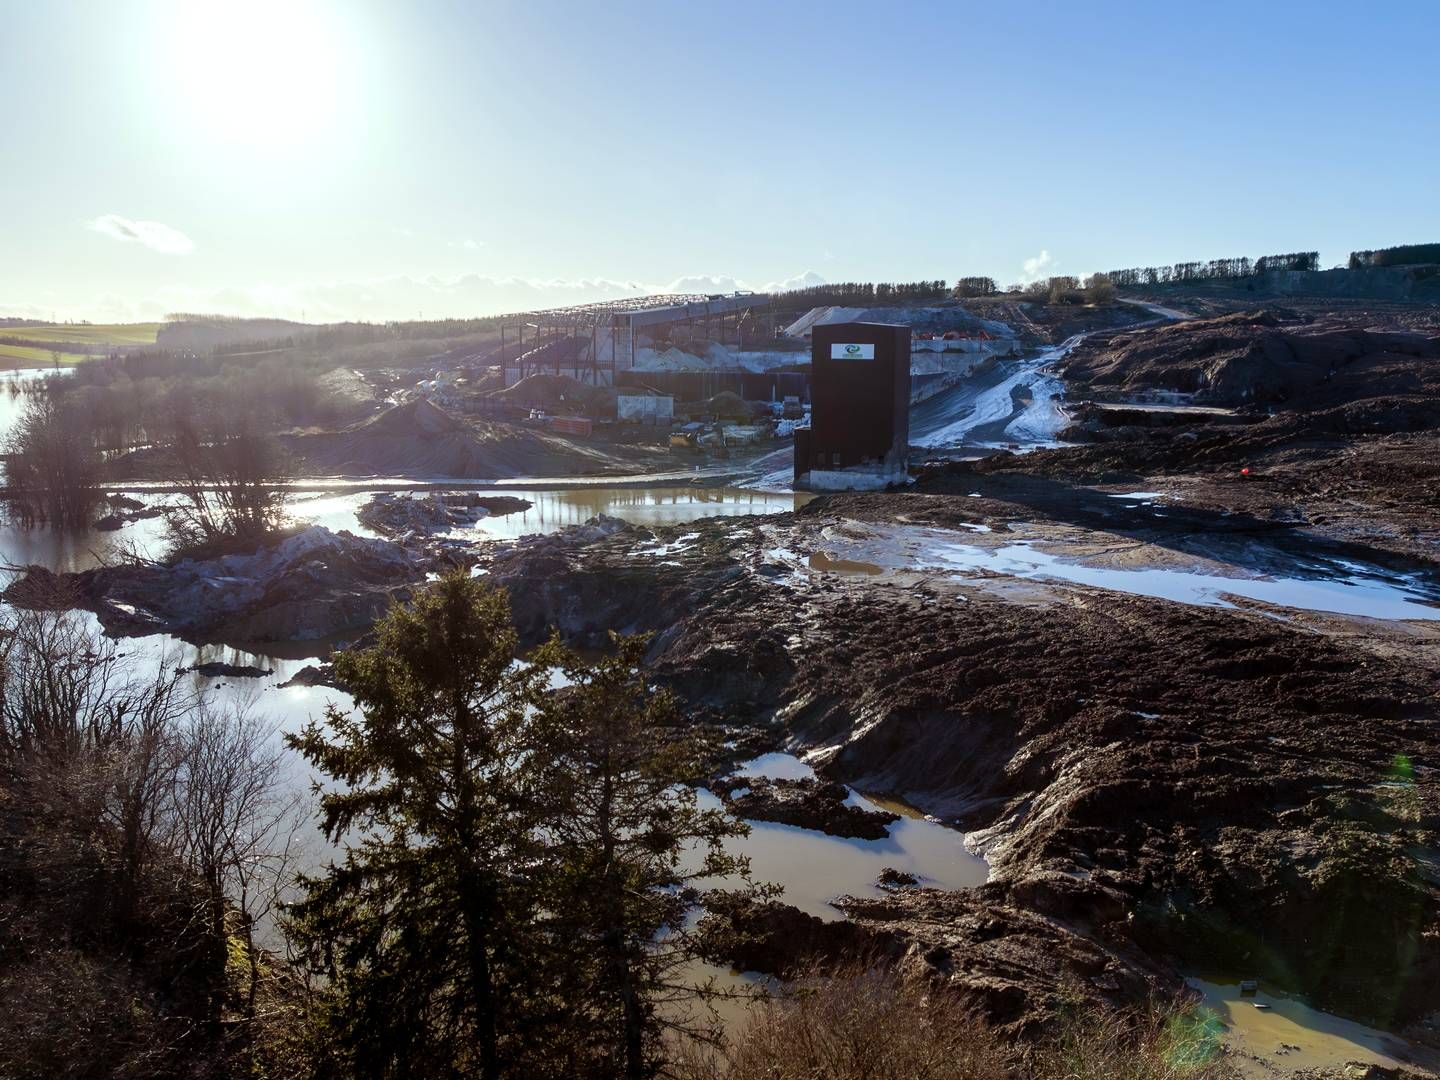 Nordic Waste gik konkurs 22. januar i år, efter at et jordskred på den ejendom ved Randers, hvor selskabet drev sin forretning fra, truede med at begrave den nærliggende landsby Ølst og ødelægge dyrelivet i Alling Å. | Foto: Benny Kjølhede